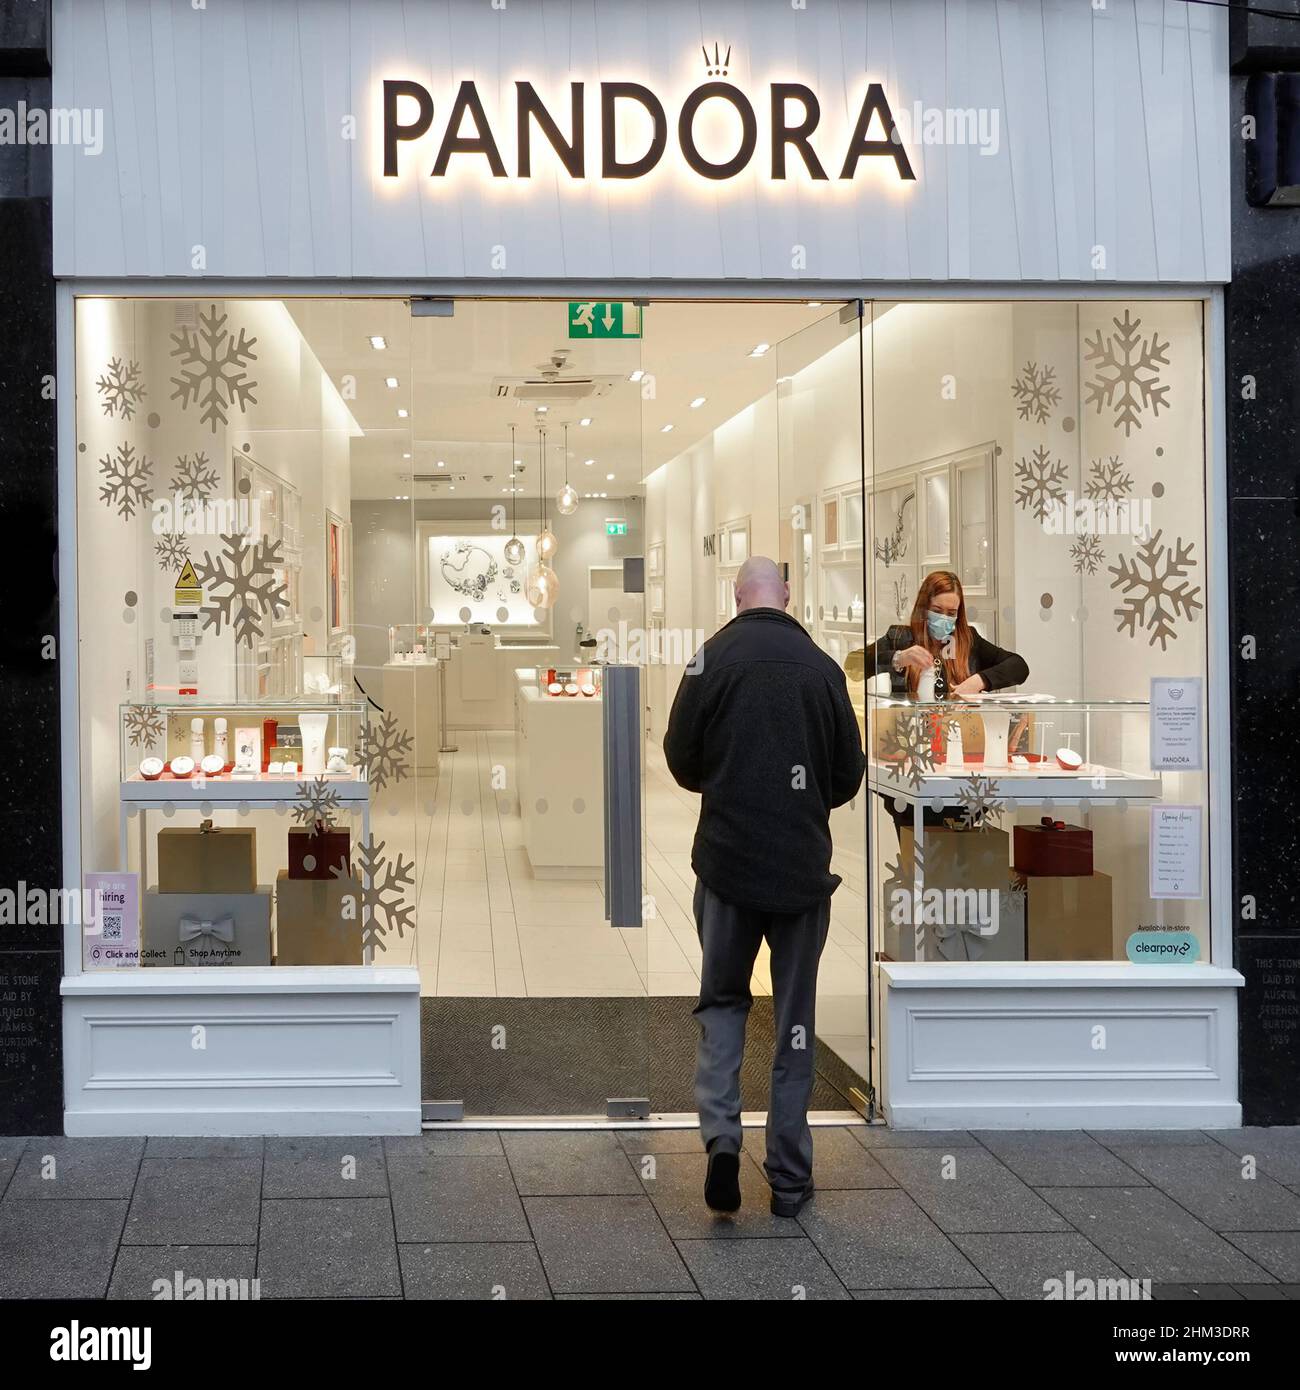 Pandora Shop Front Weihnachten Innenraum Abend Lichter auf Sicht Mitarbeiter  passt Fenster Anzeige & Rückansichten der männlichen Käufer Kunden  außerhalb Großbritanniens Stockfotografie - Alamy